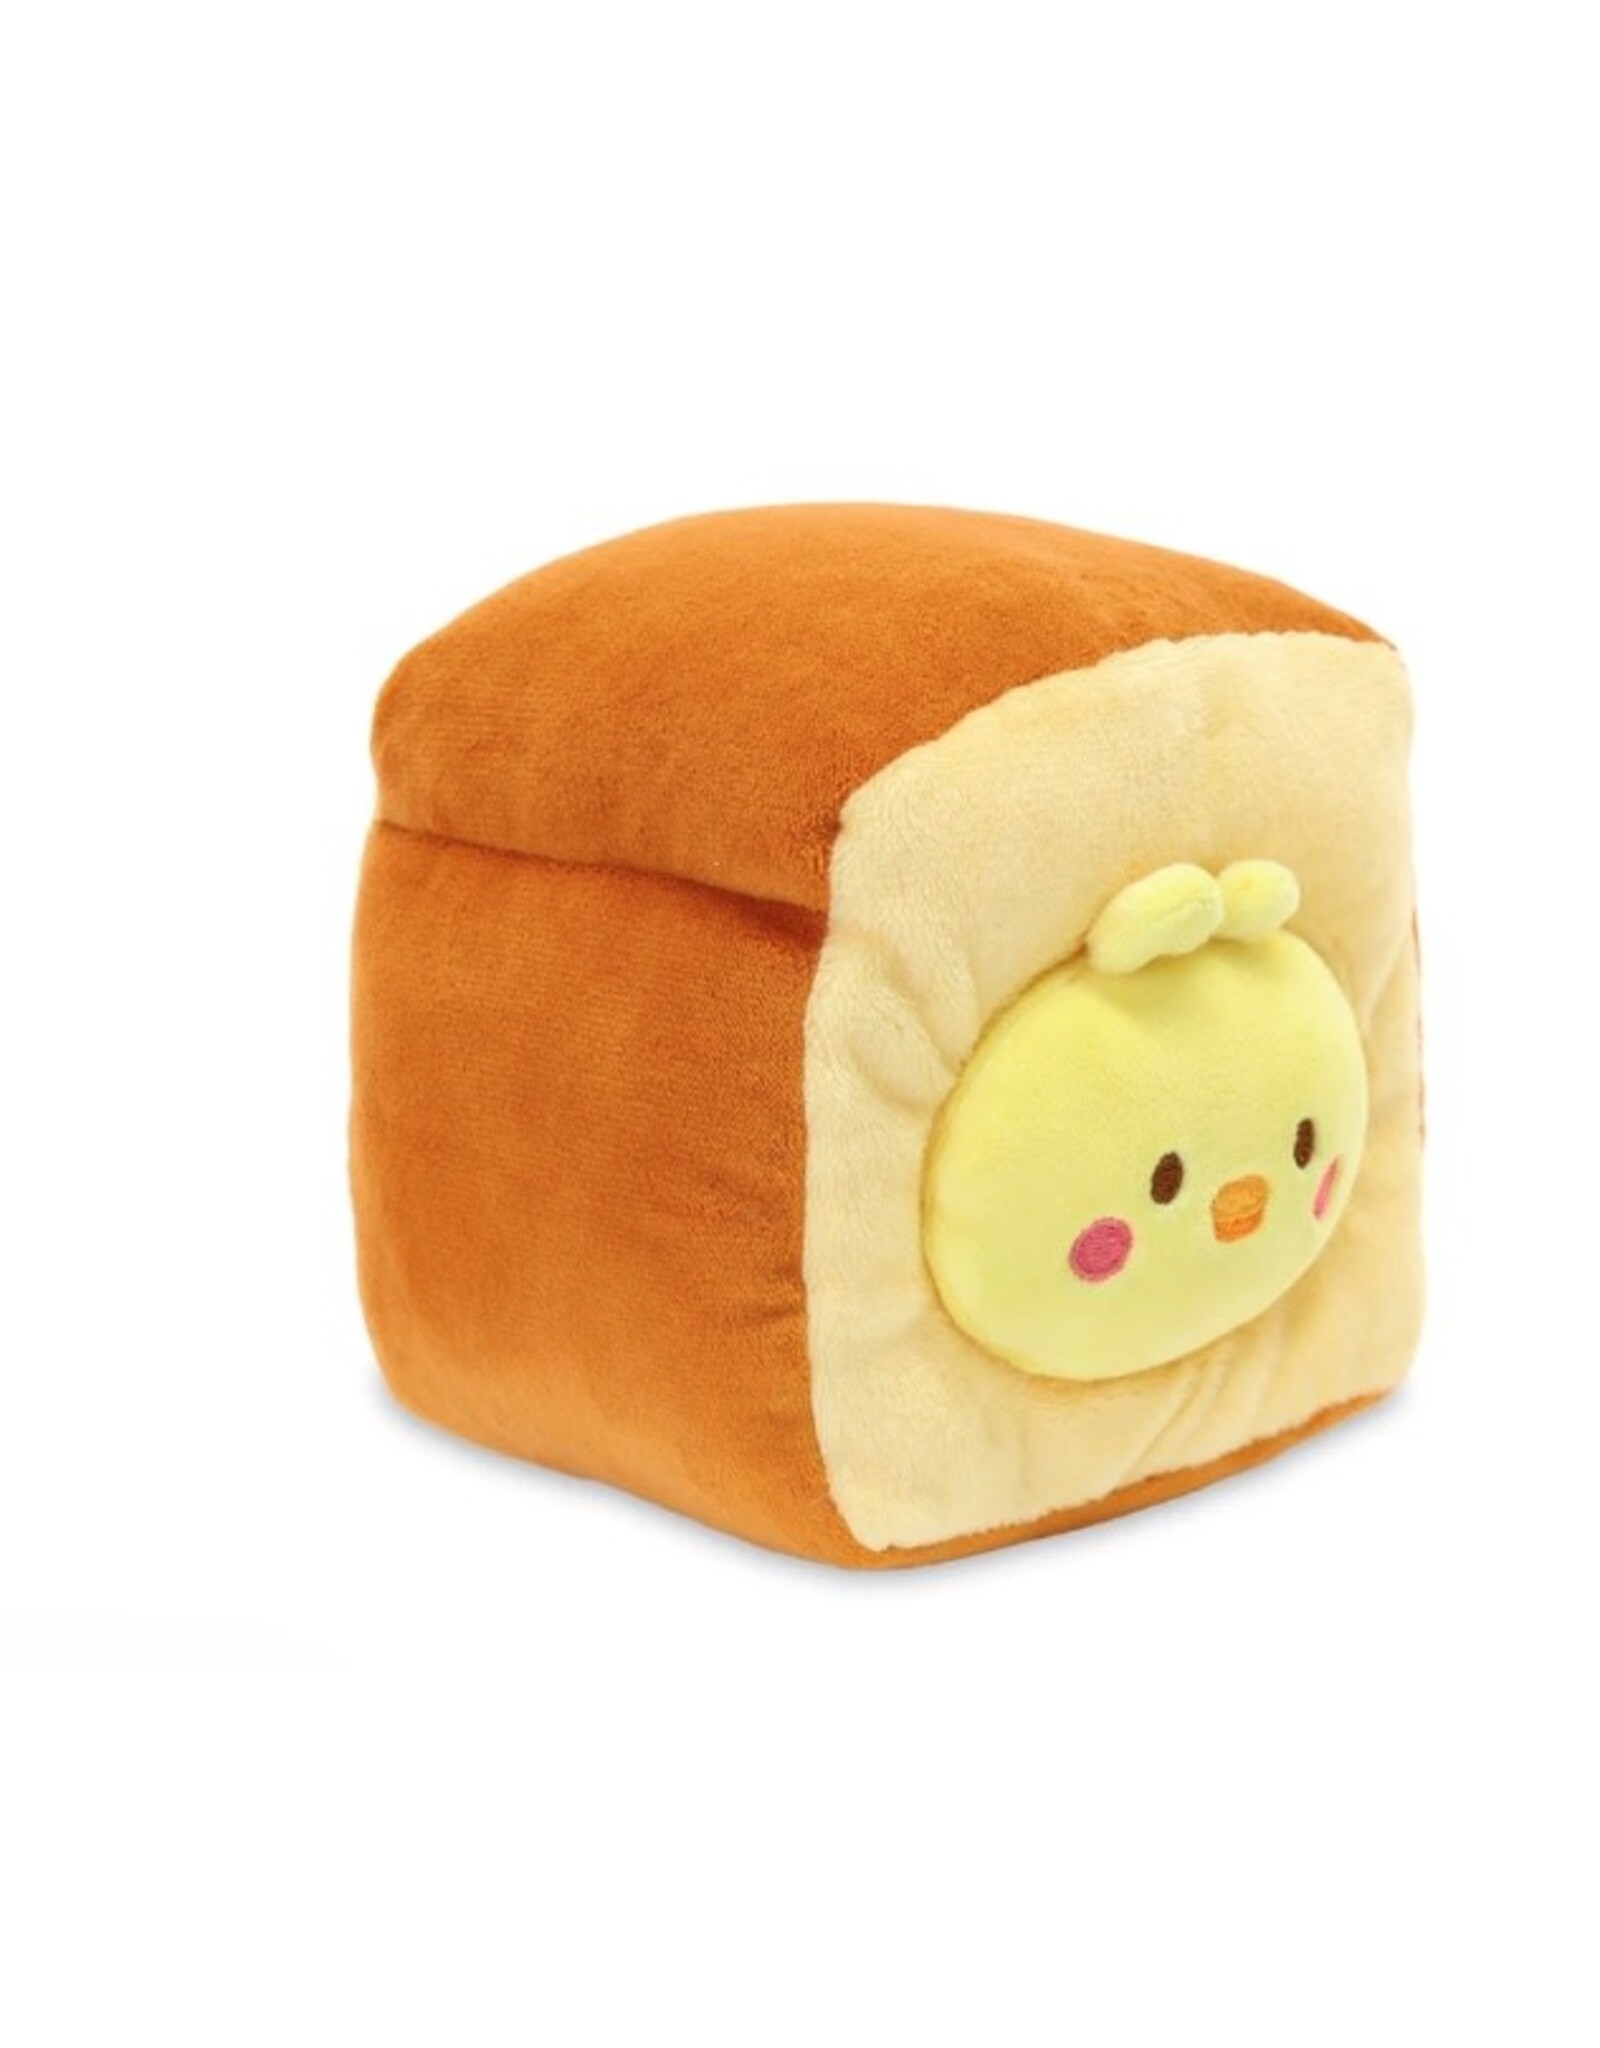 Anirollz Freshly Baked Bread Chickiroll Plush Blanket Small